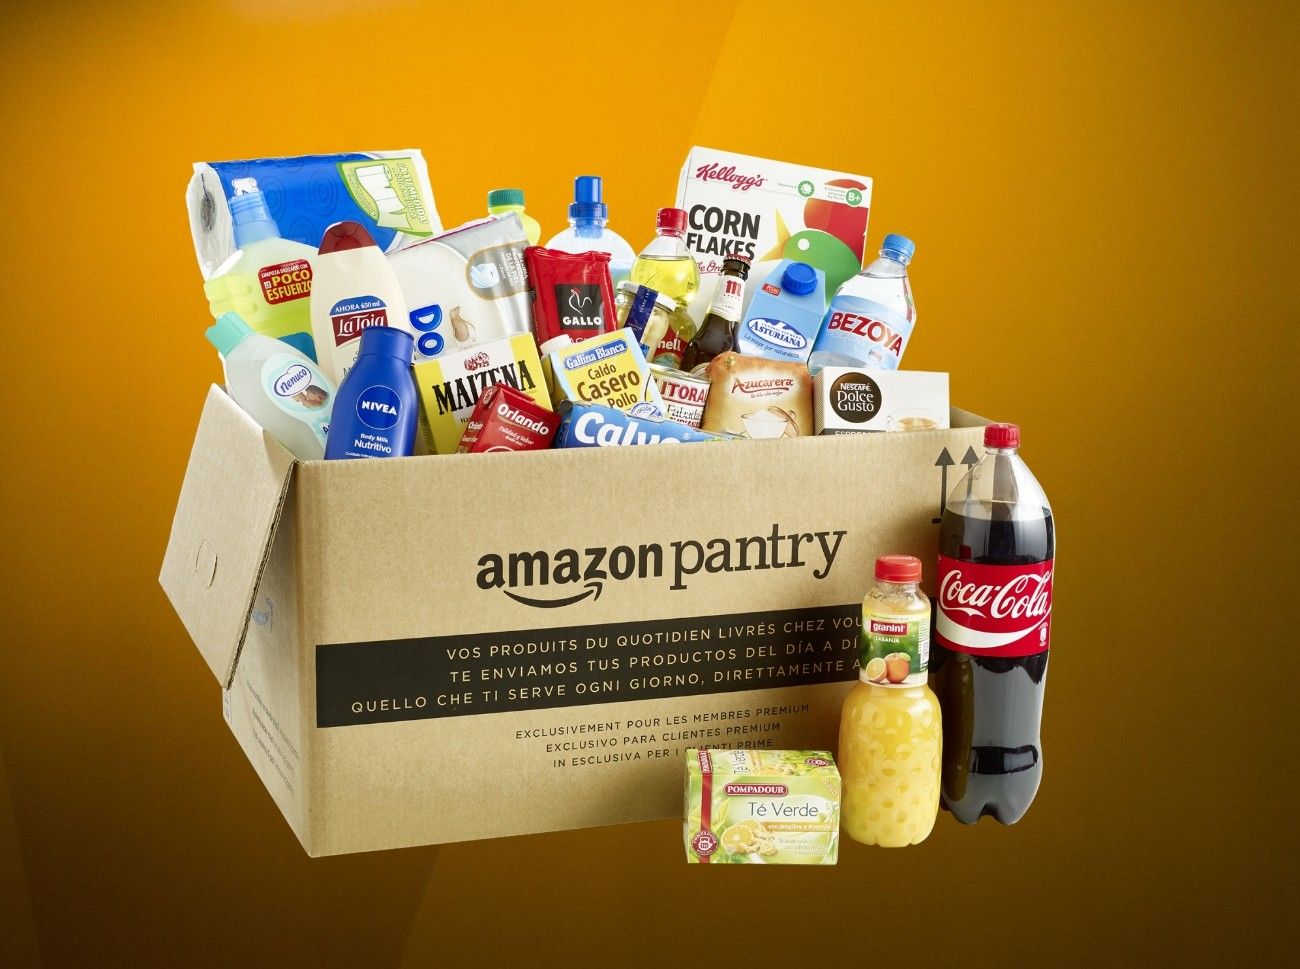 No siempre Amazon acierta: cierra su supermercado online